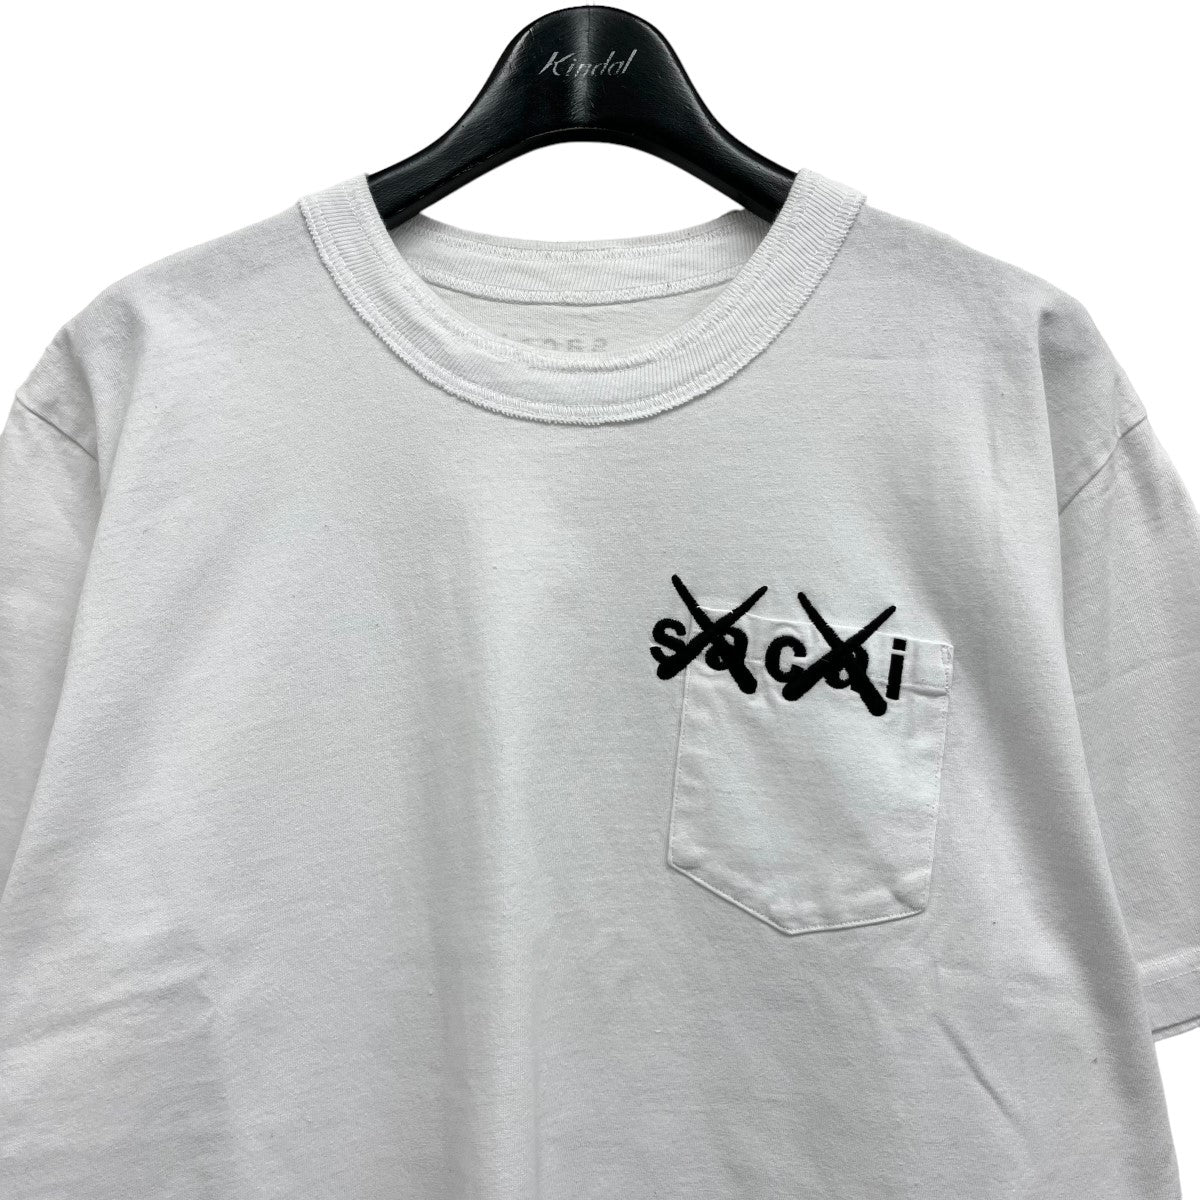 sacai×KAWS Embroidery T-Shirt 胸刺繍Tシャツ 21-0285S ホワイト ...